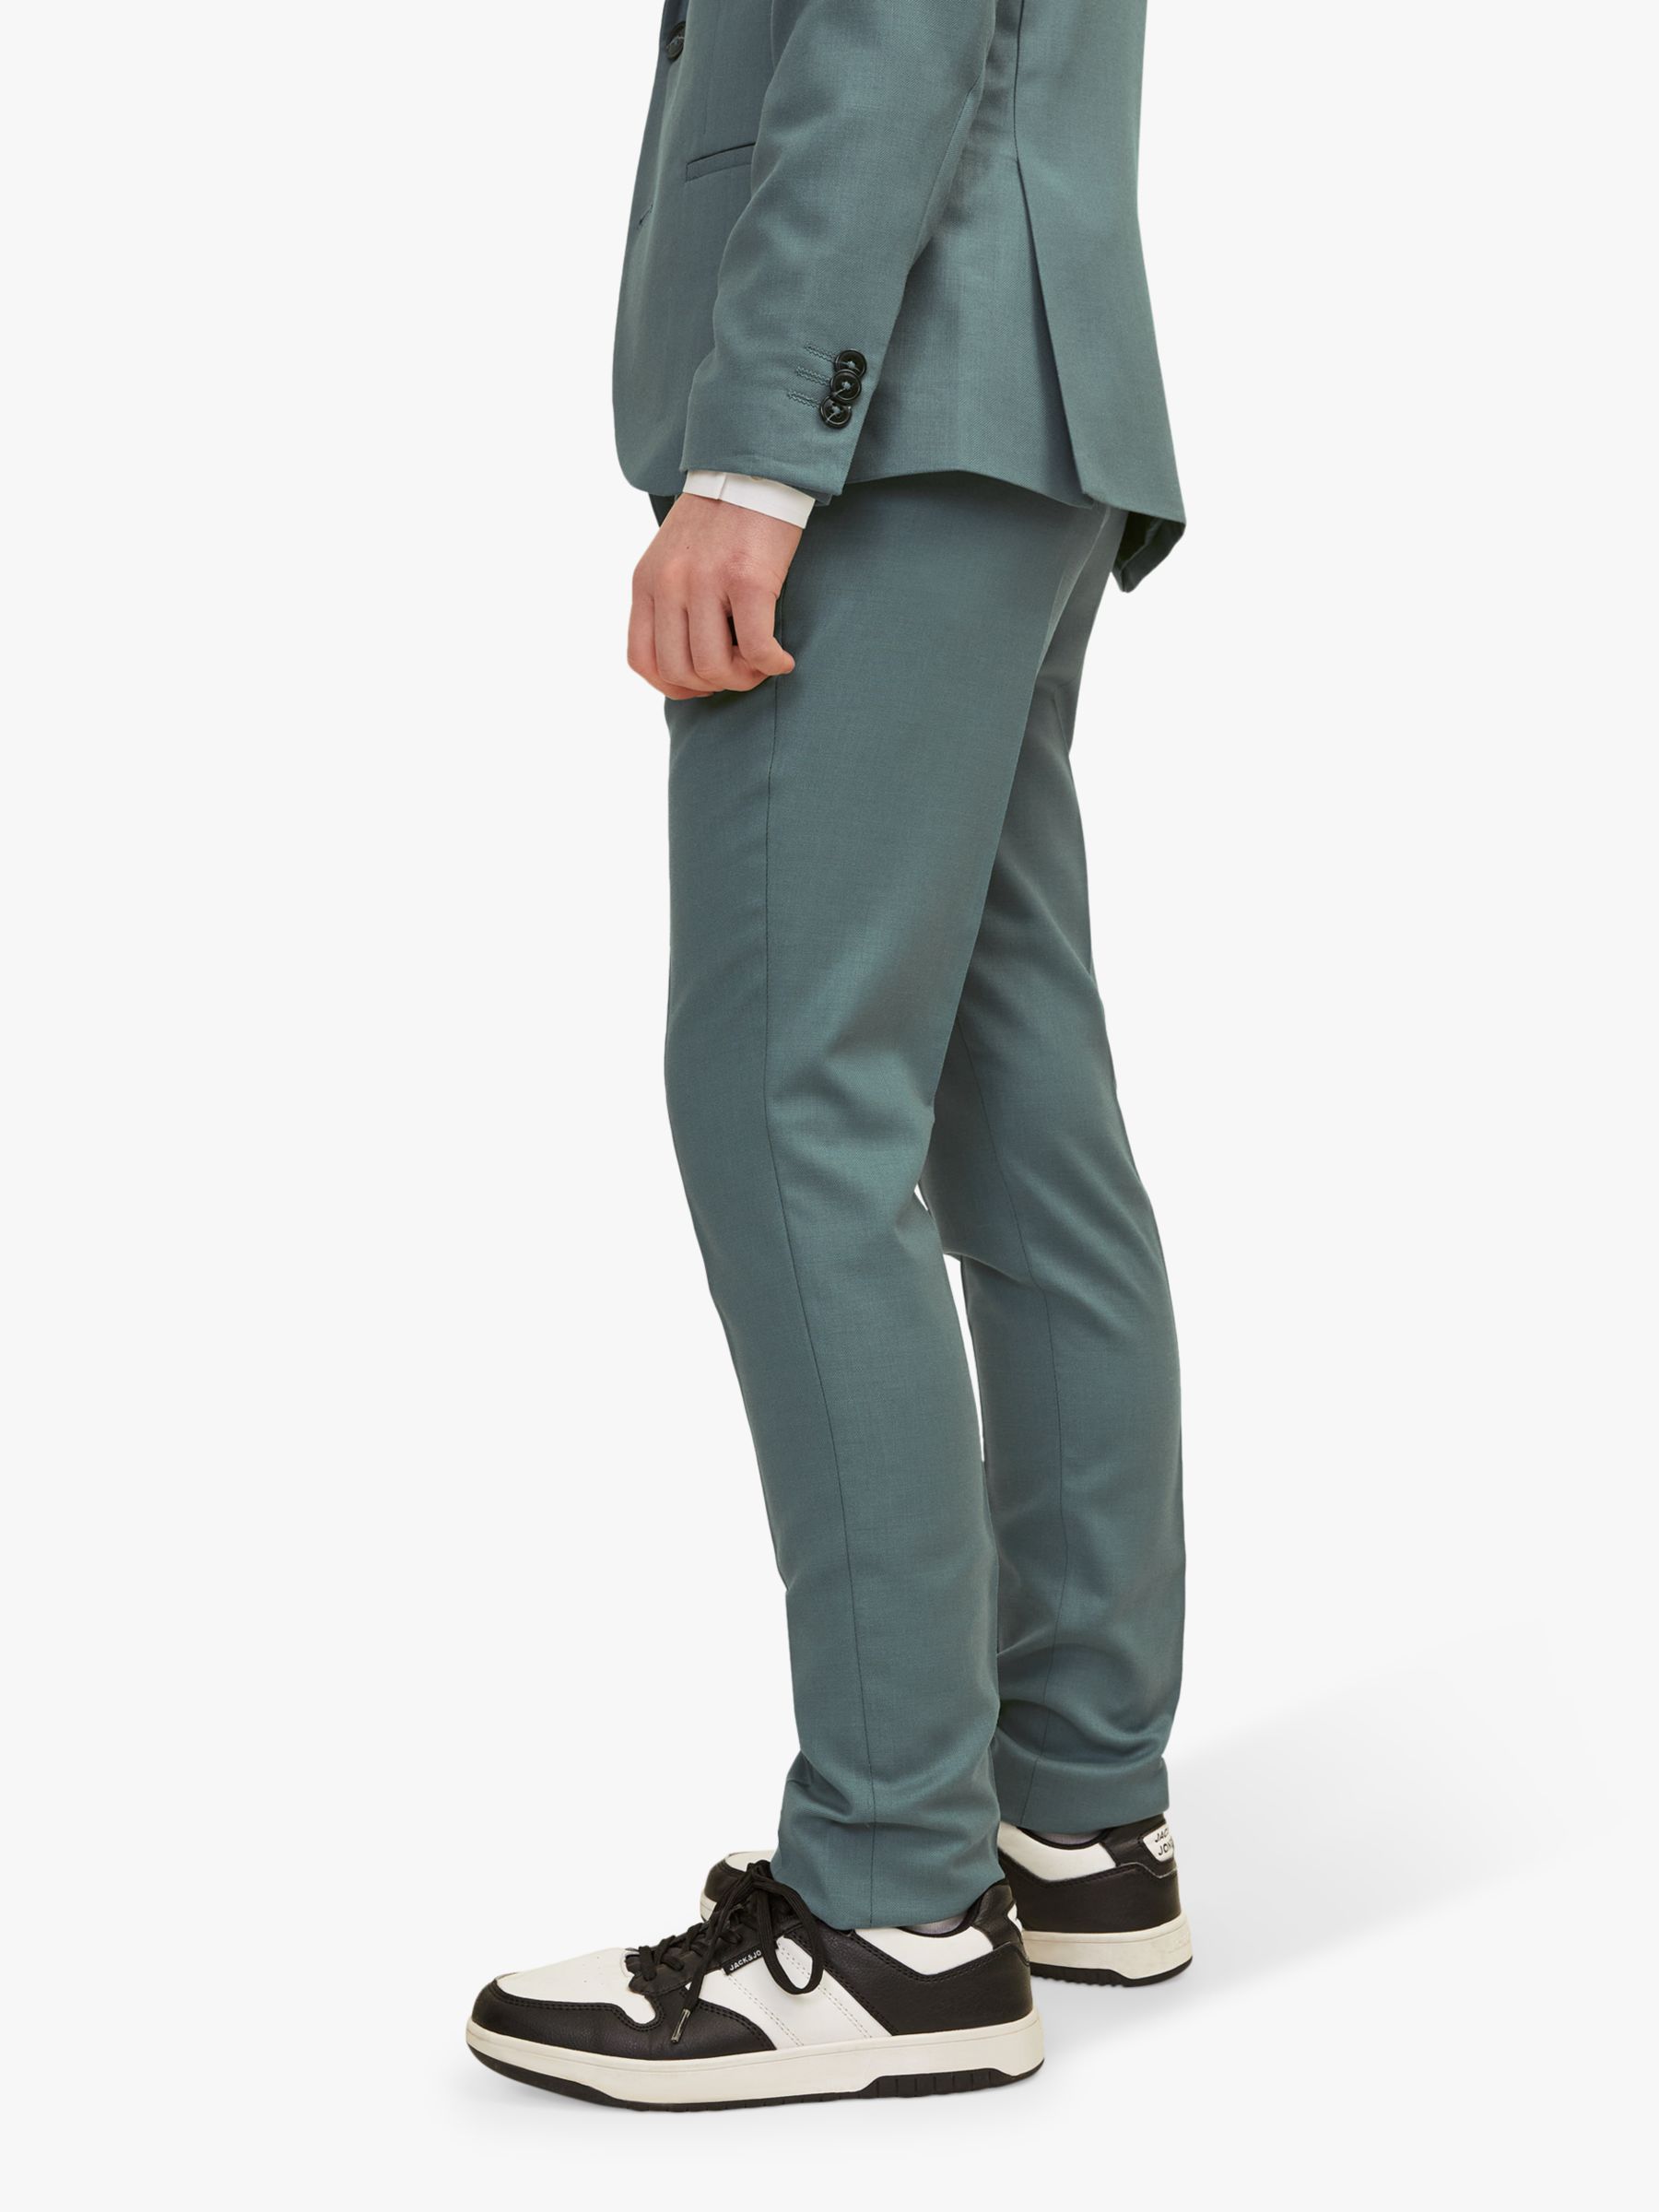 Jack & Jones Kids' Solaris Wool Blend Suit Trousers, Balsam Green, 8 years